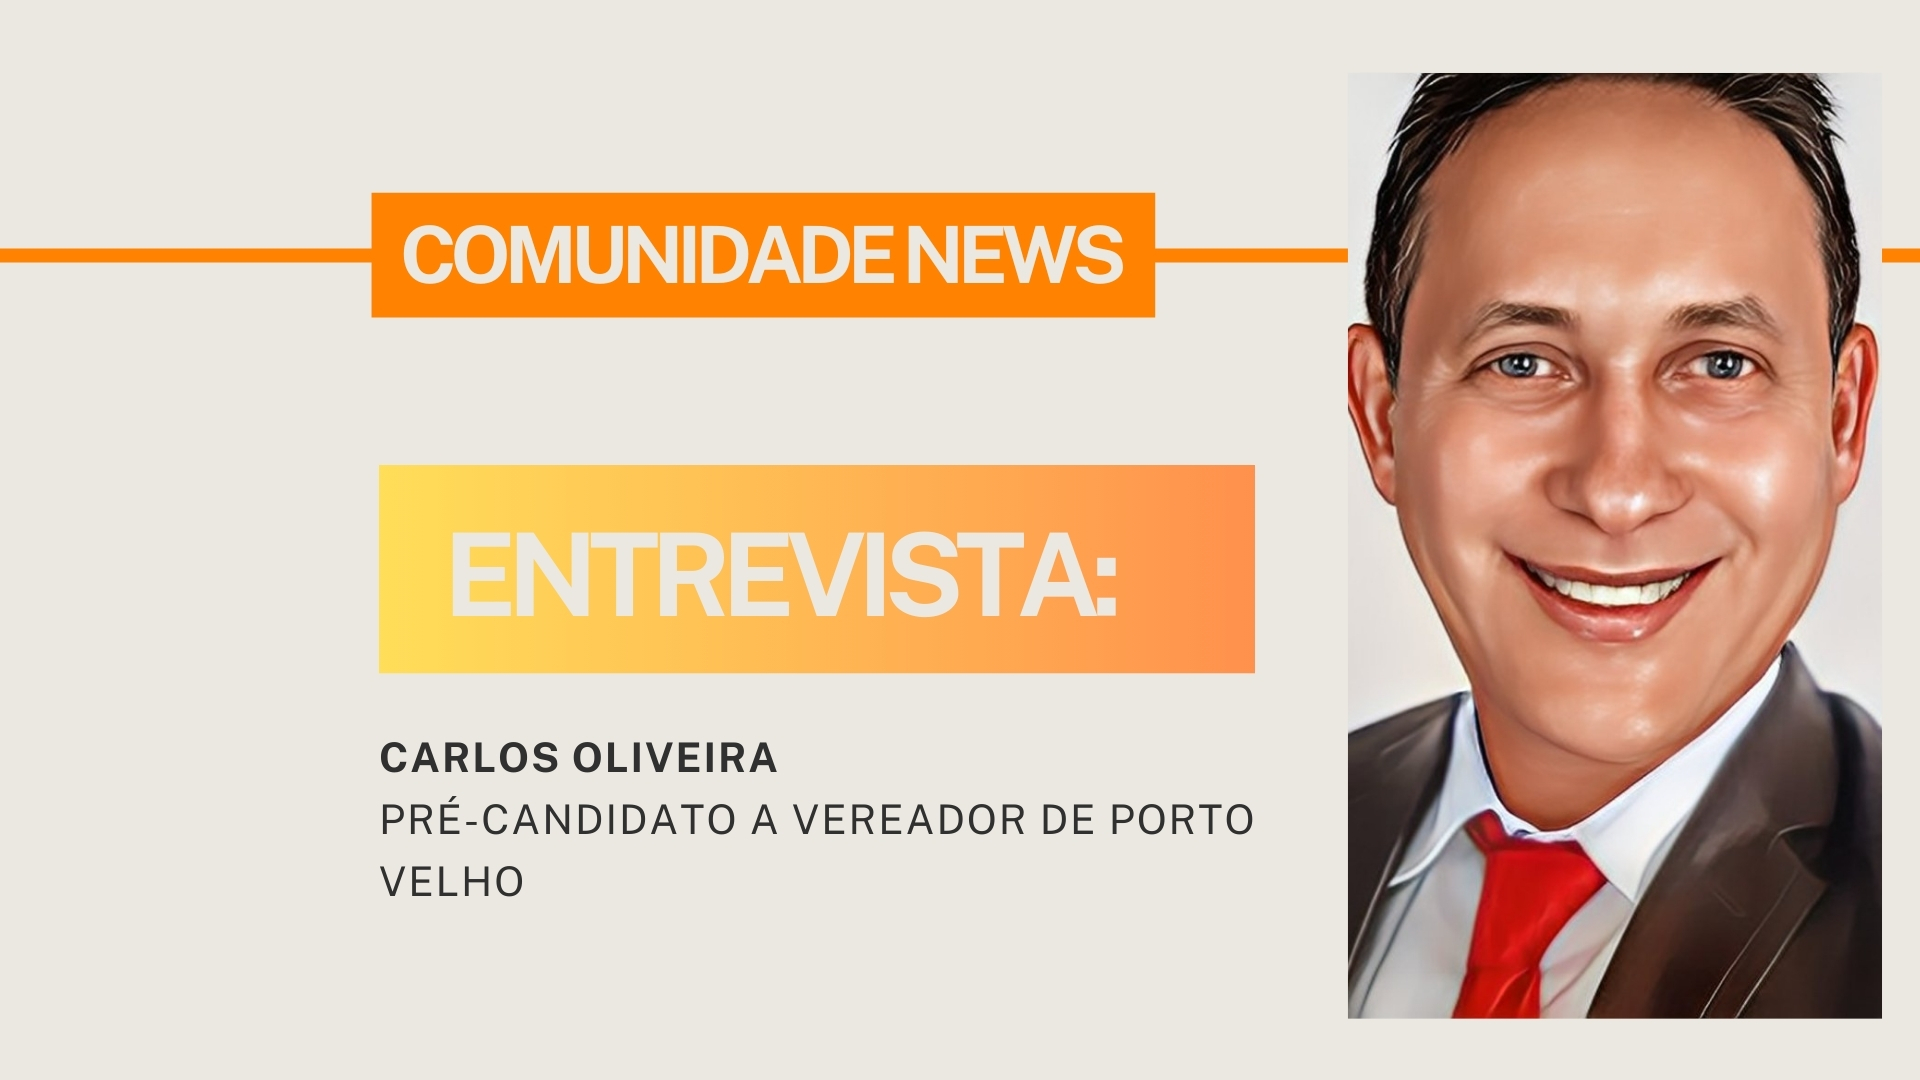 #ComunidadeNews | Entrevista Carlos Oliveira, pré-candidato a vereador de Porto Velho